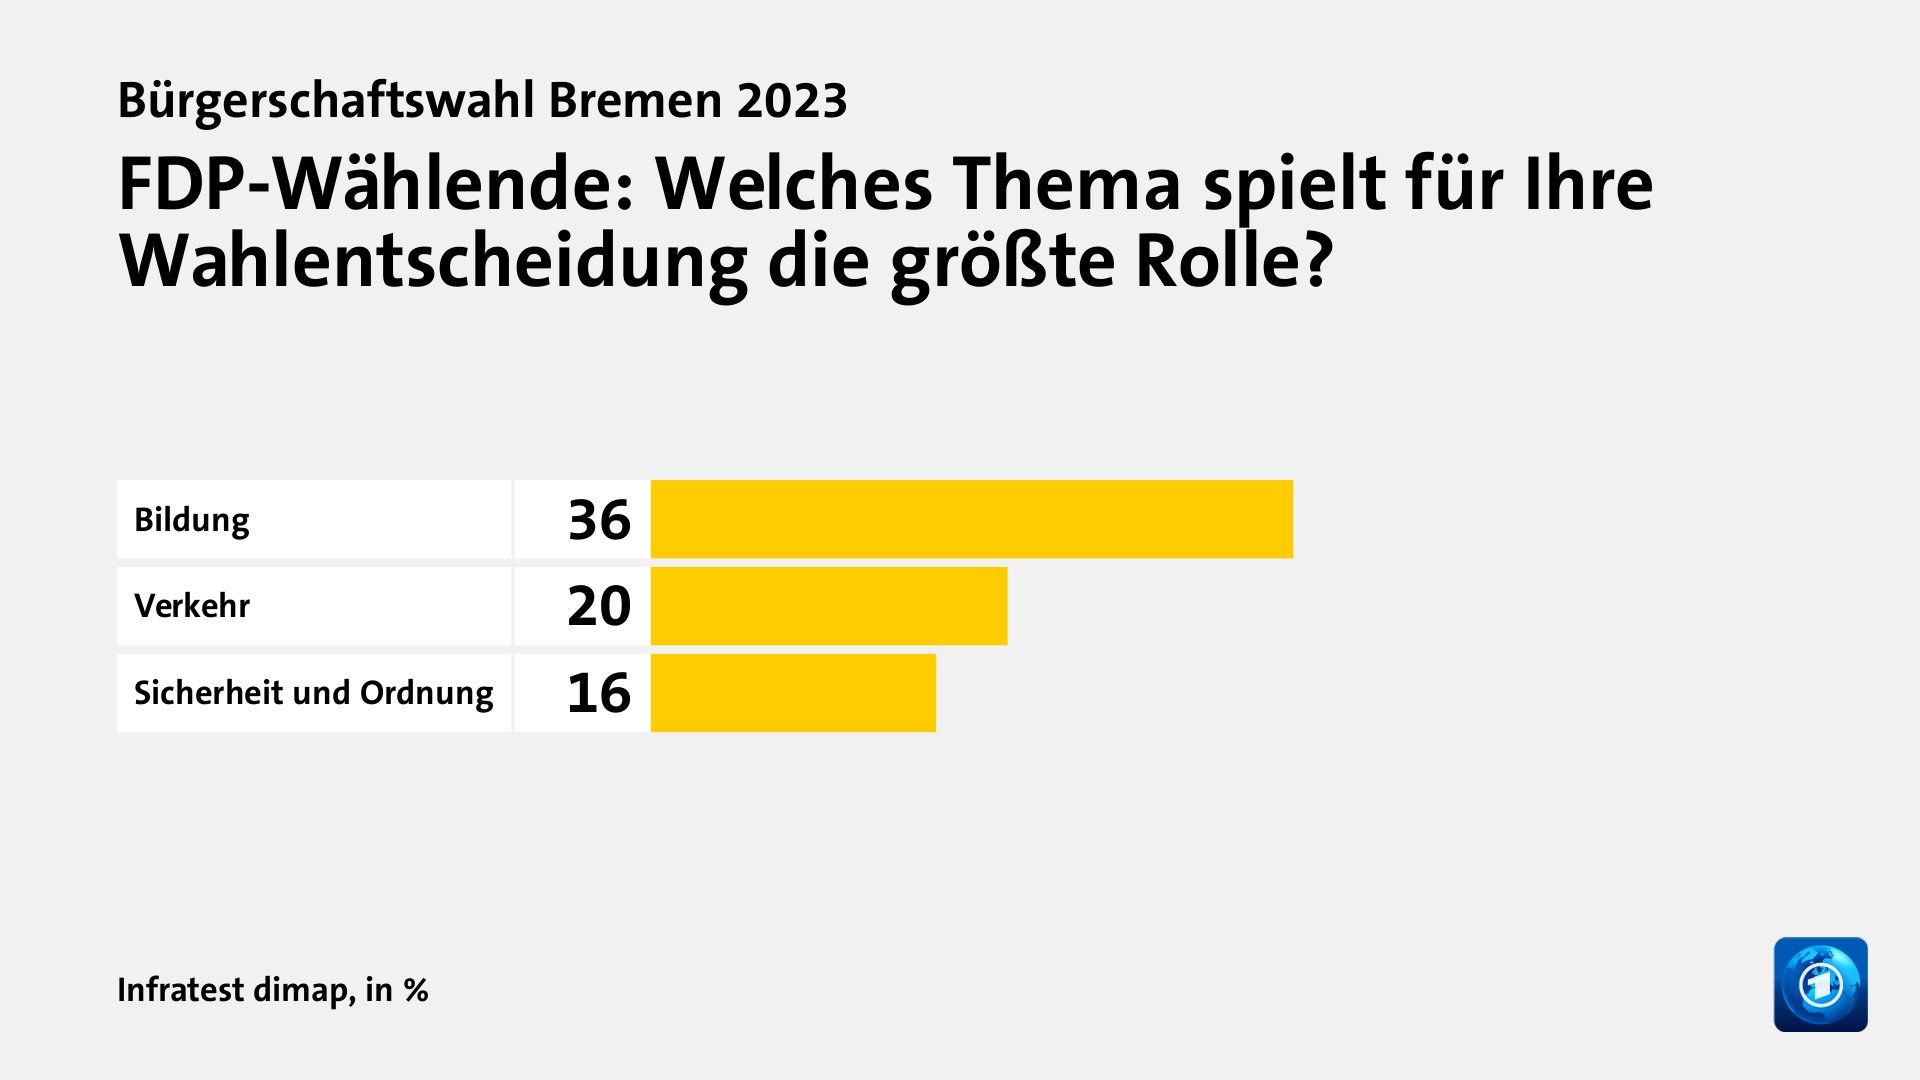 FDP-Wählende: Welches Thema spielt für Ihre Wahlentscheidung die größte Rolle?, in %: Bildung 36, Verkehr 20, Sicherheit und Ordnung  16, Quelle: Infratest dimap